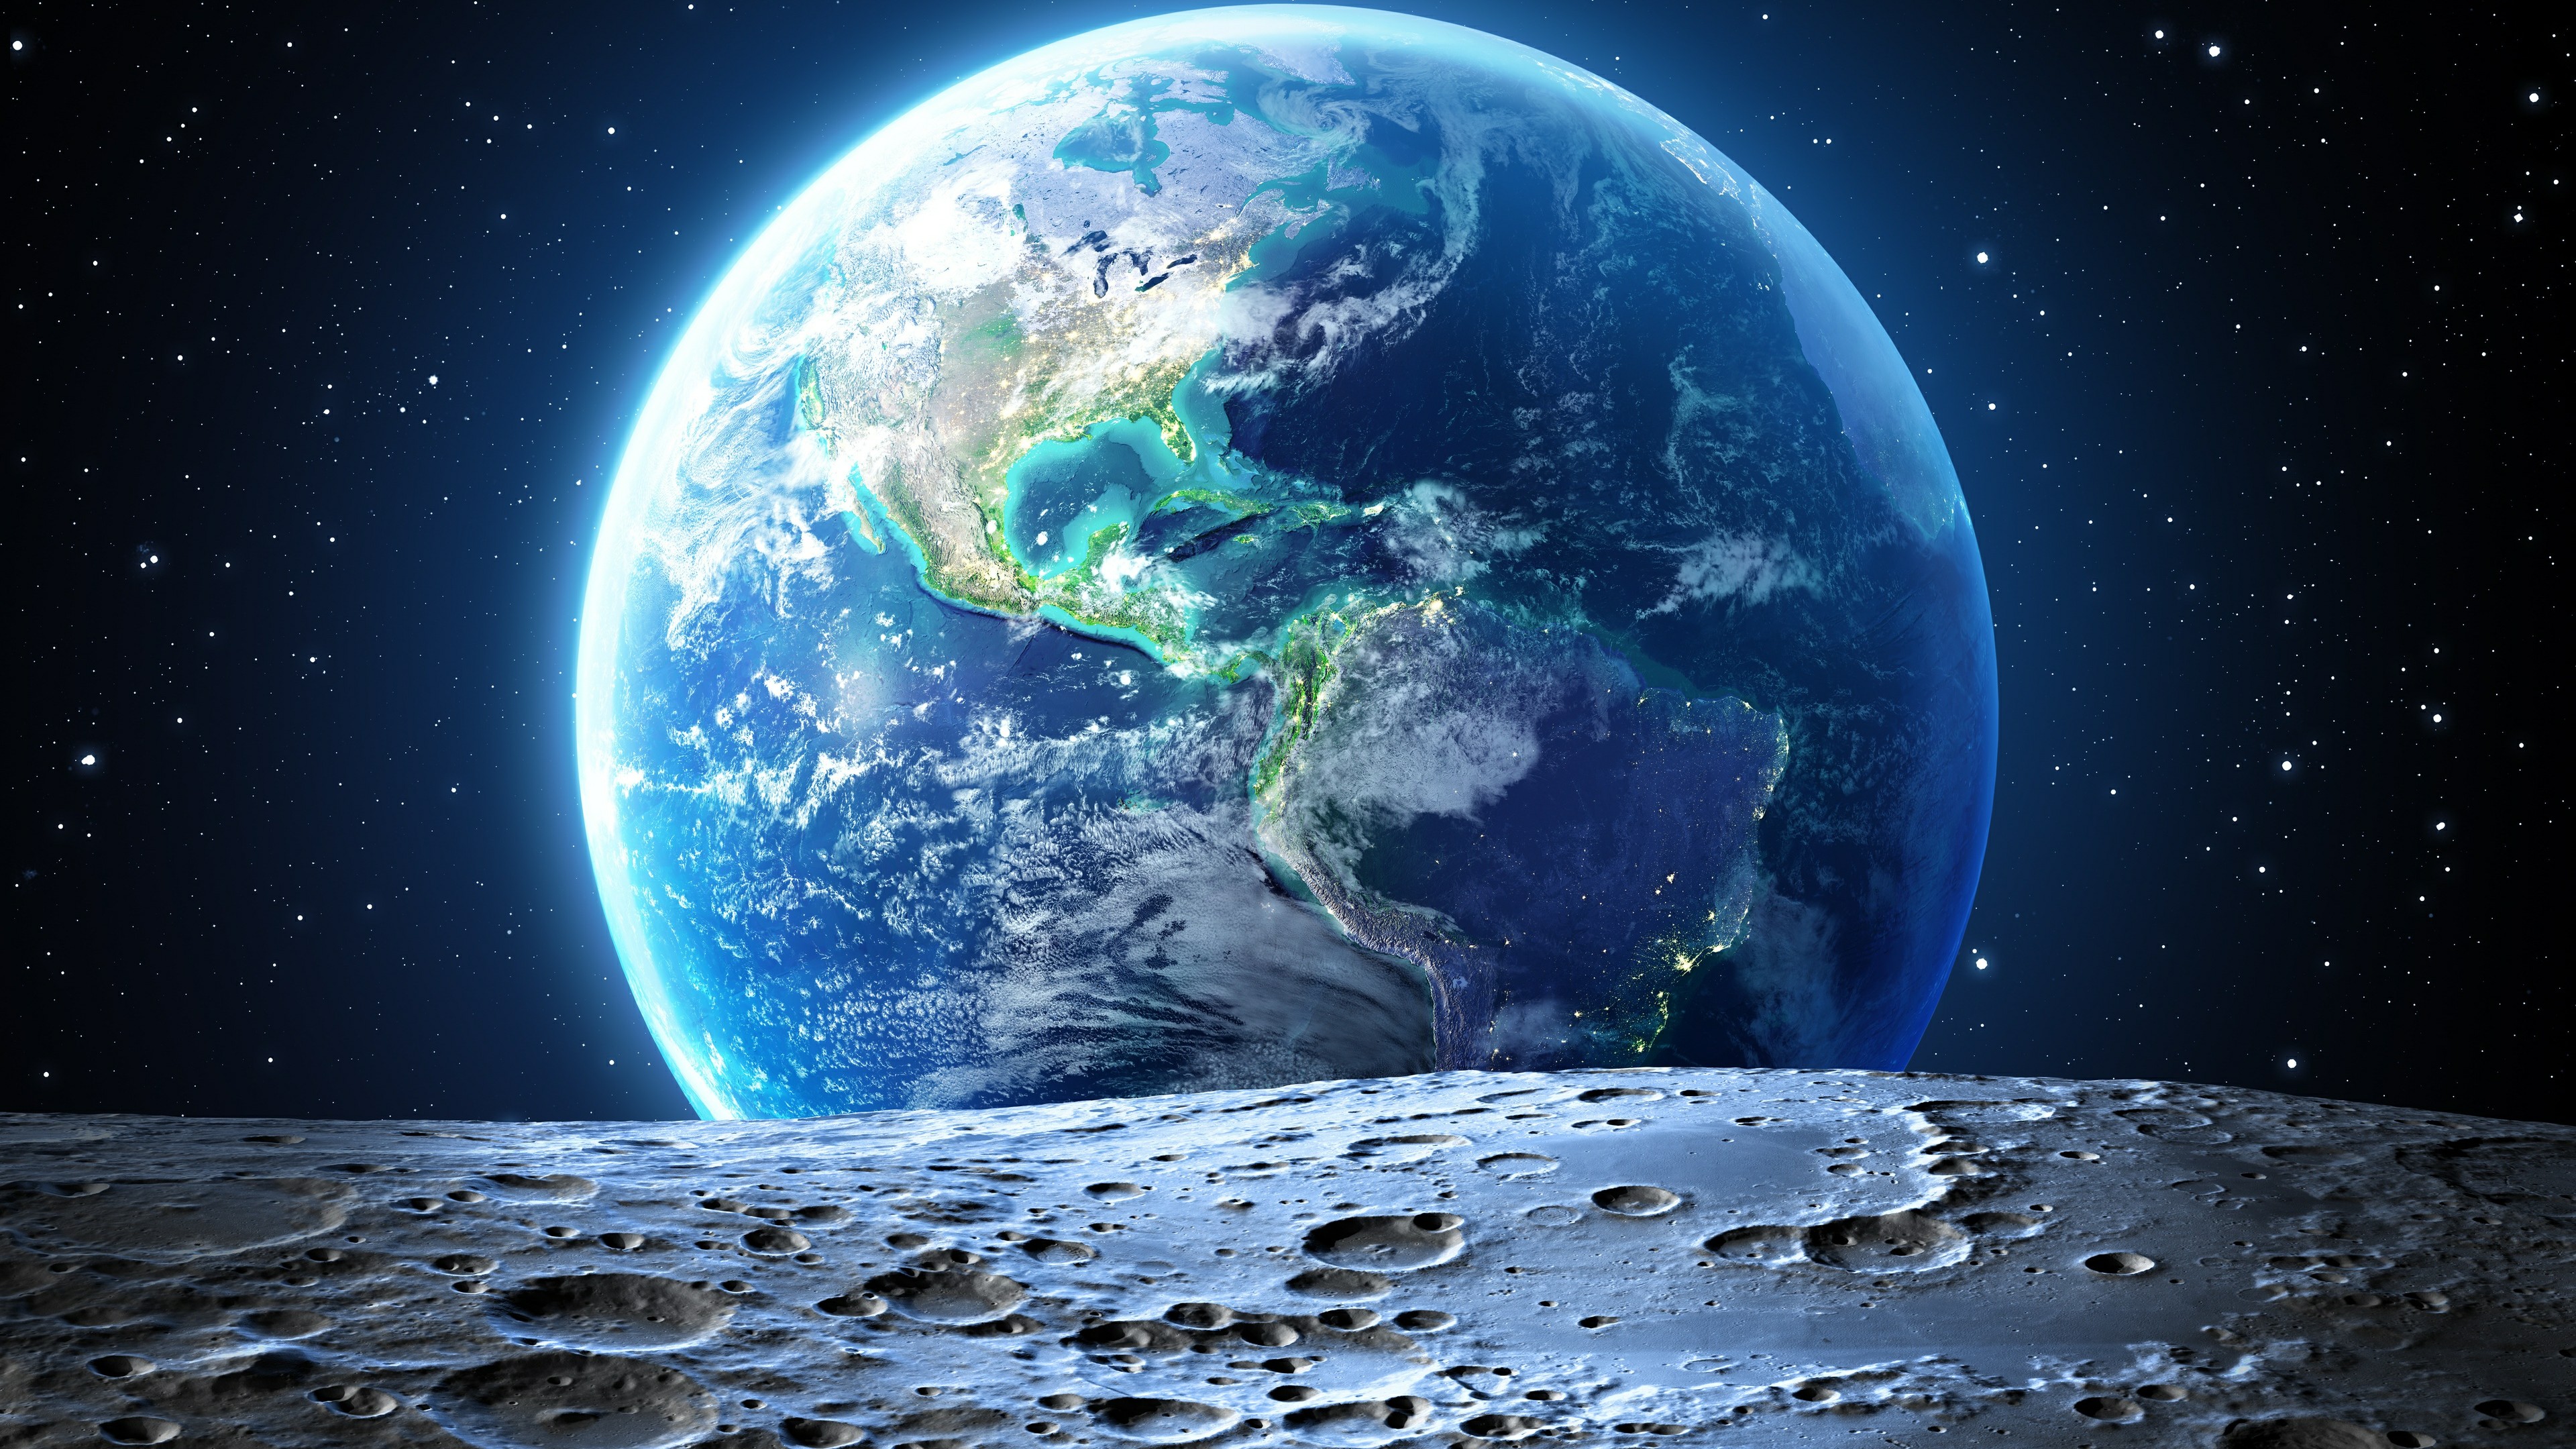 Hình ảnh Trái Đất tuyệt đẹp từ Mặt Trăng